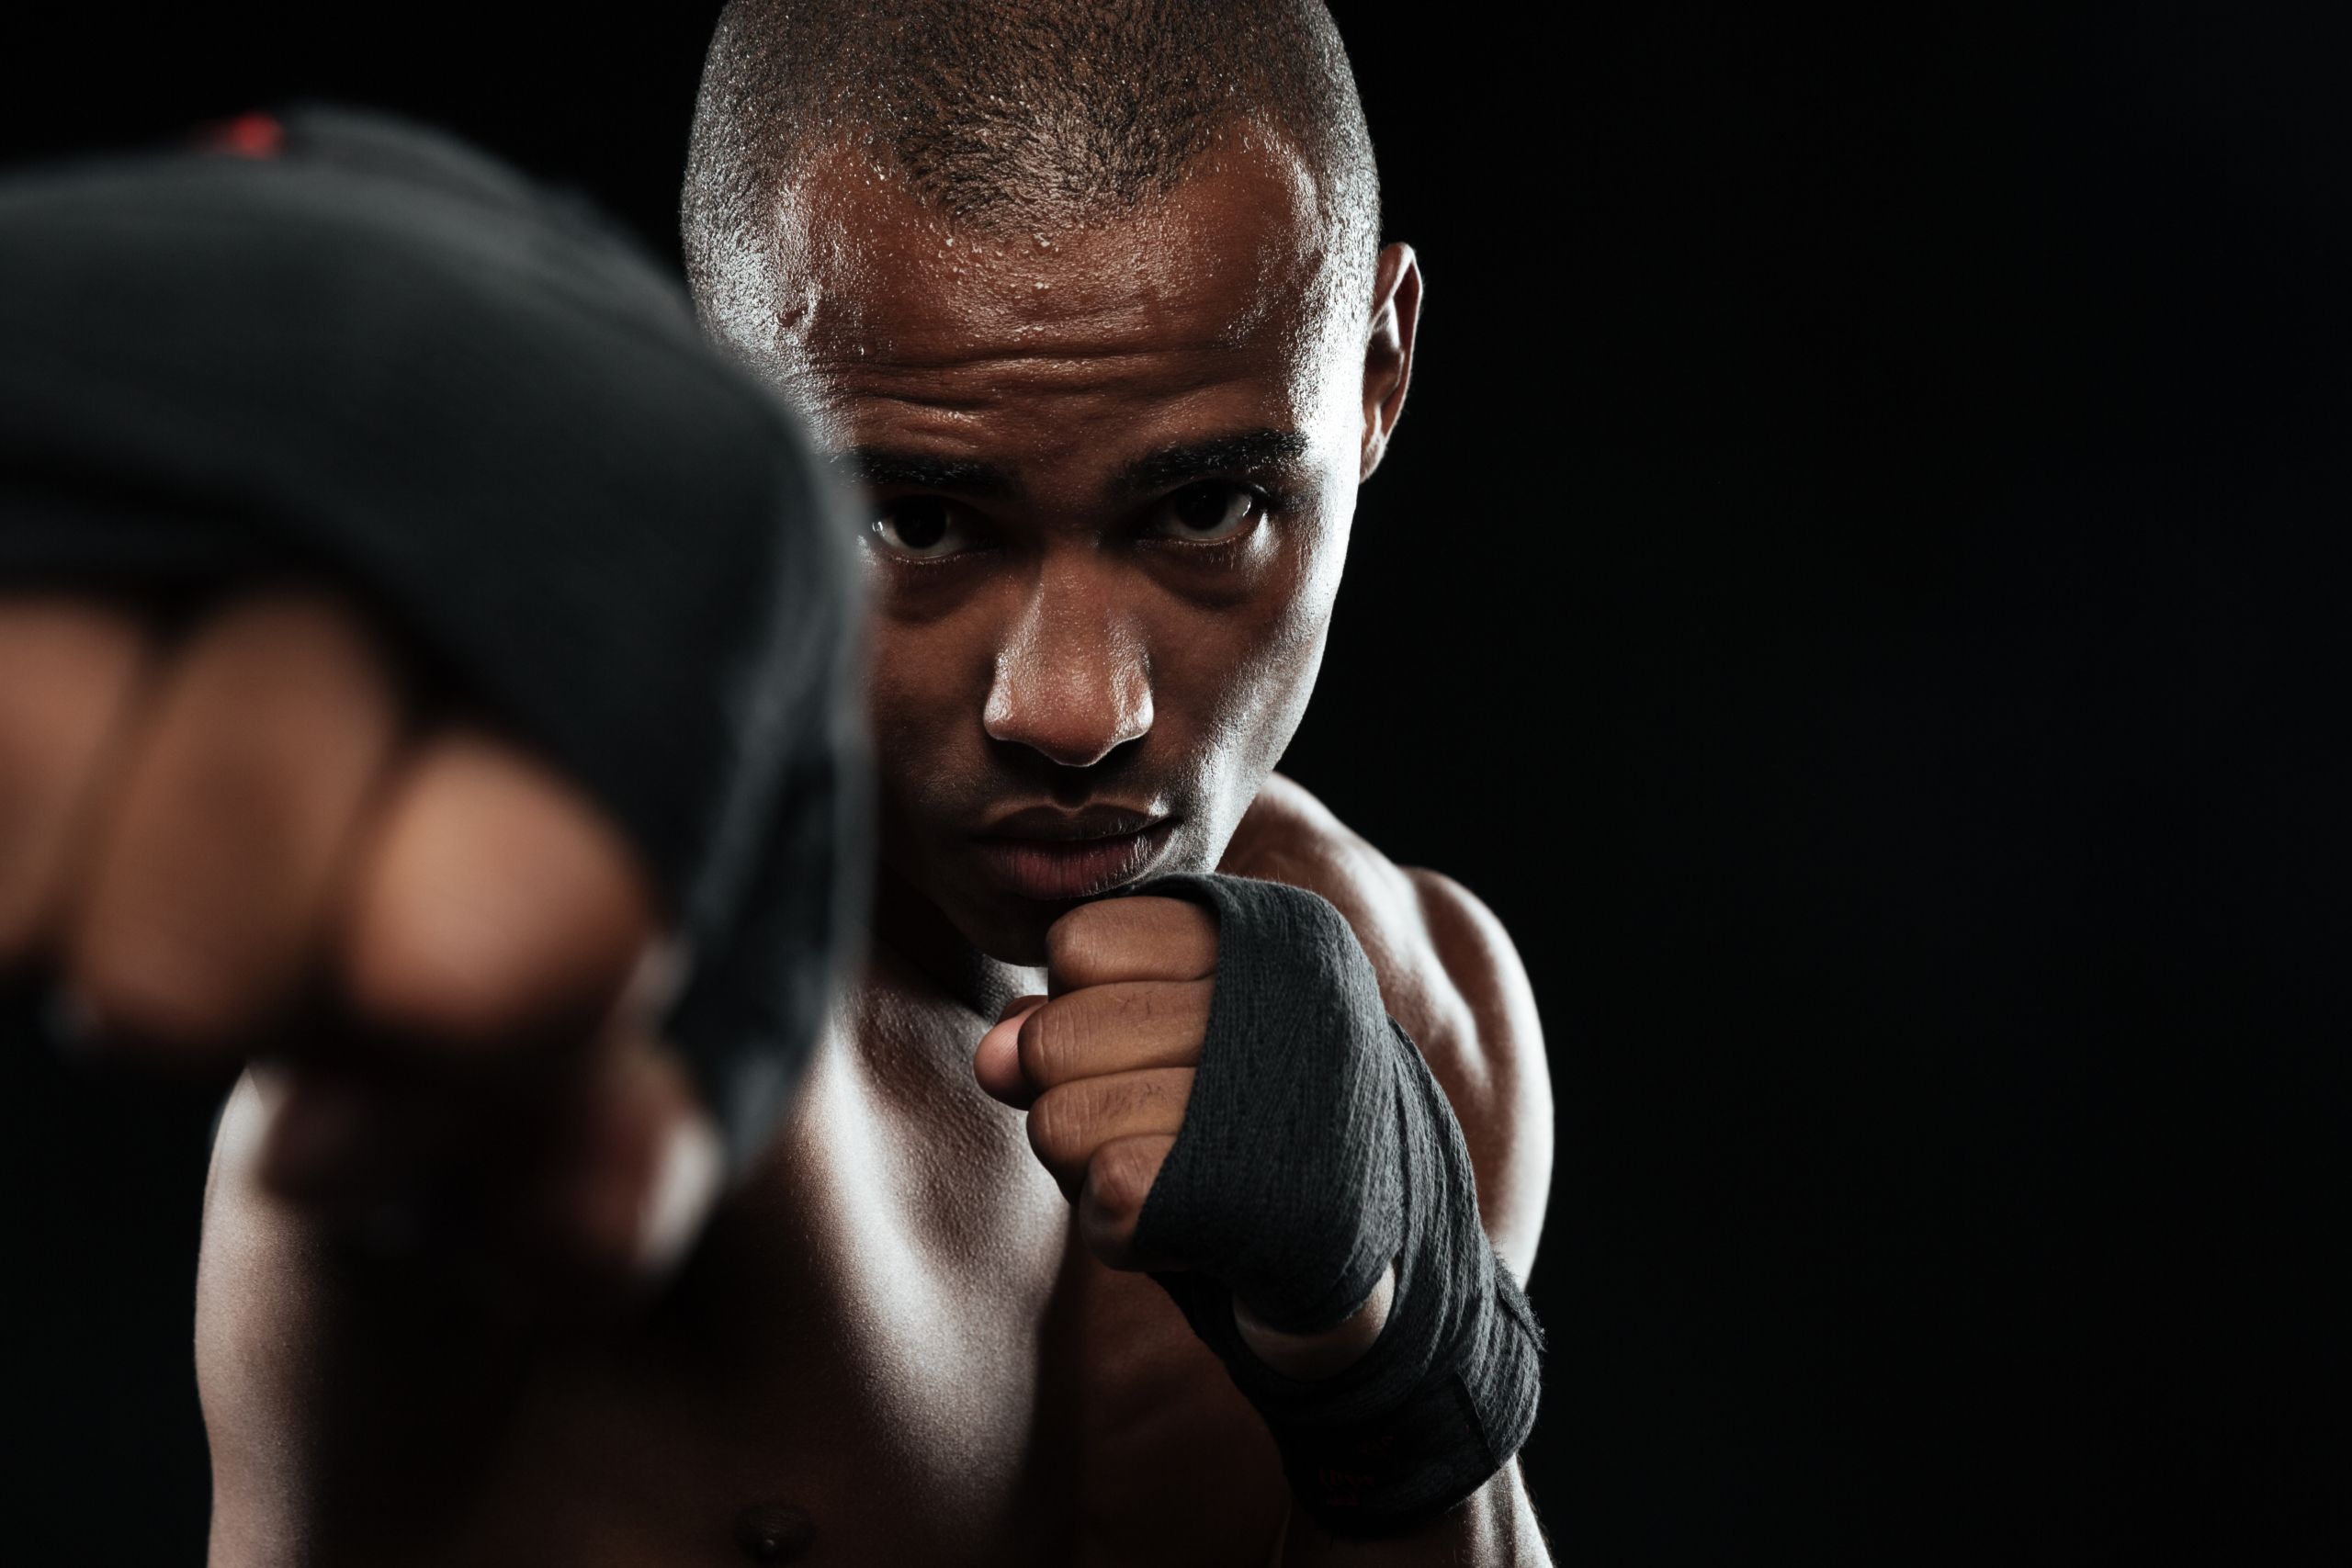 Shadow boxing #boxeo #pugilismo #entrenamiento #beneficios